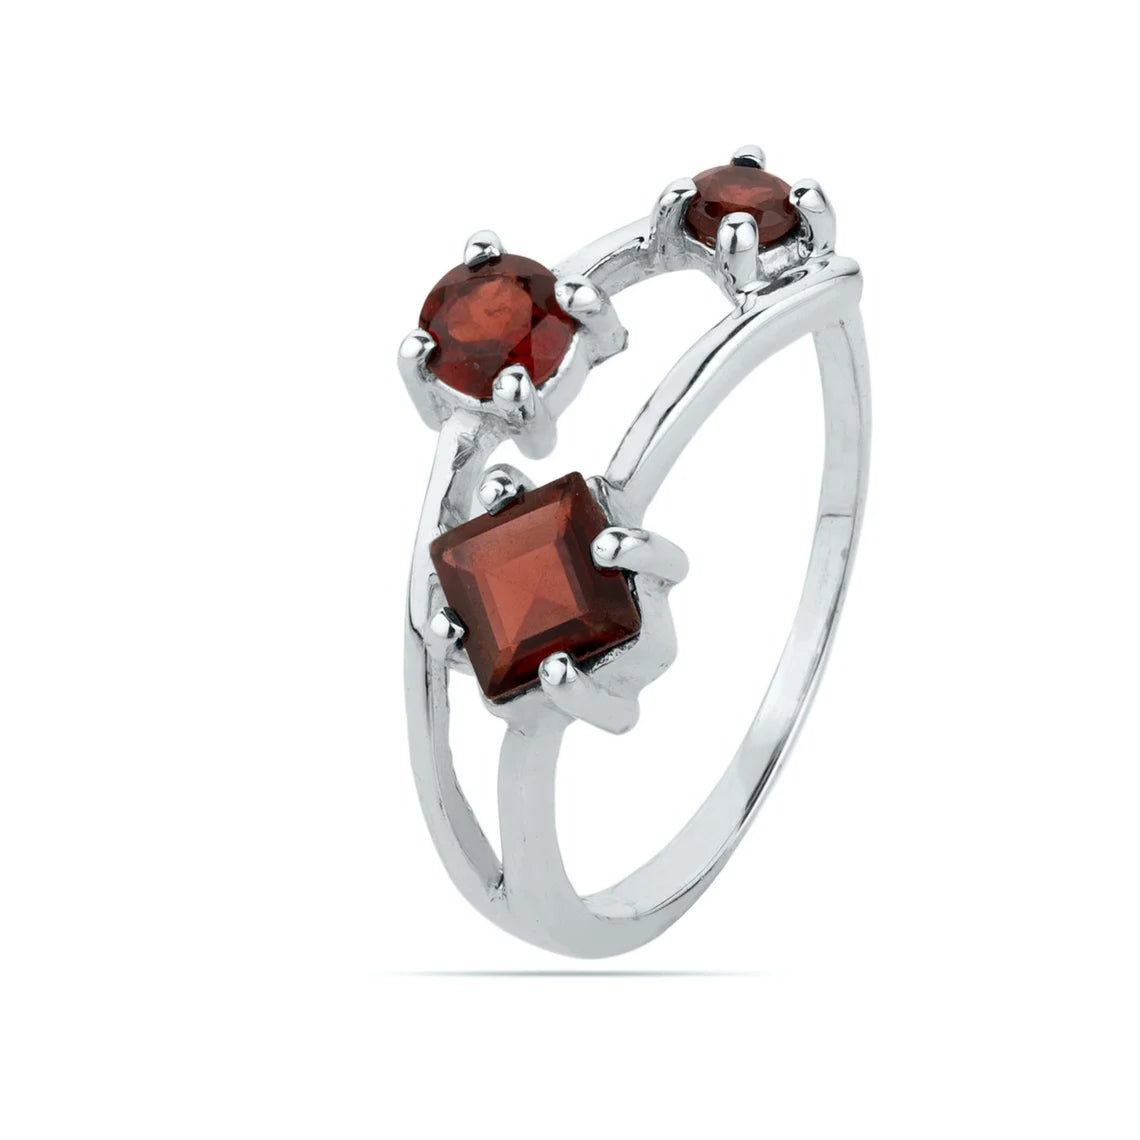 Garnet Gemstone Ring - engagement ring - prong setting ring - 925 sterling silver - Multi Gemstone Ring